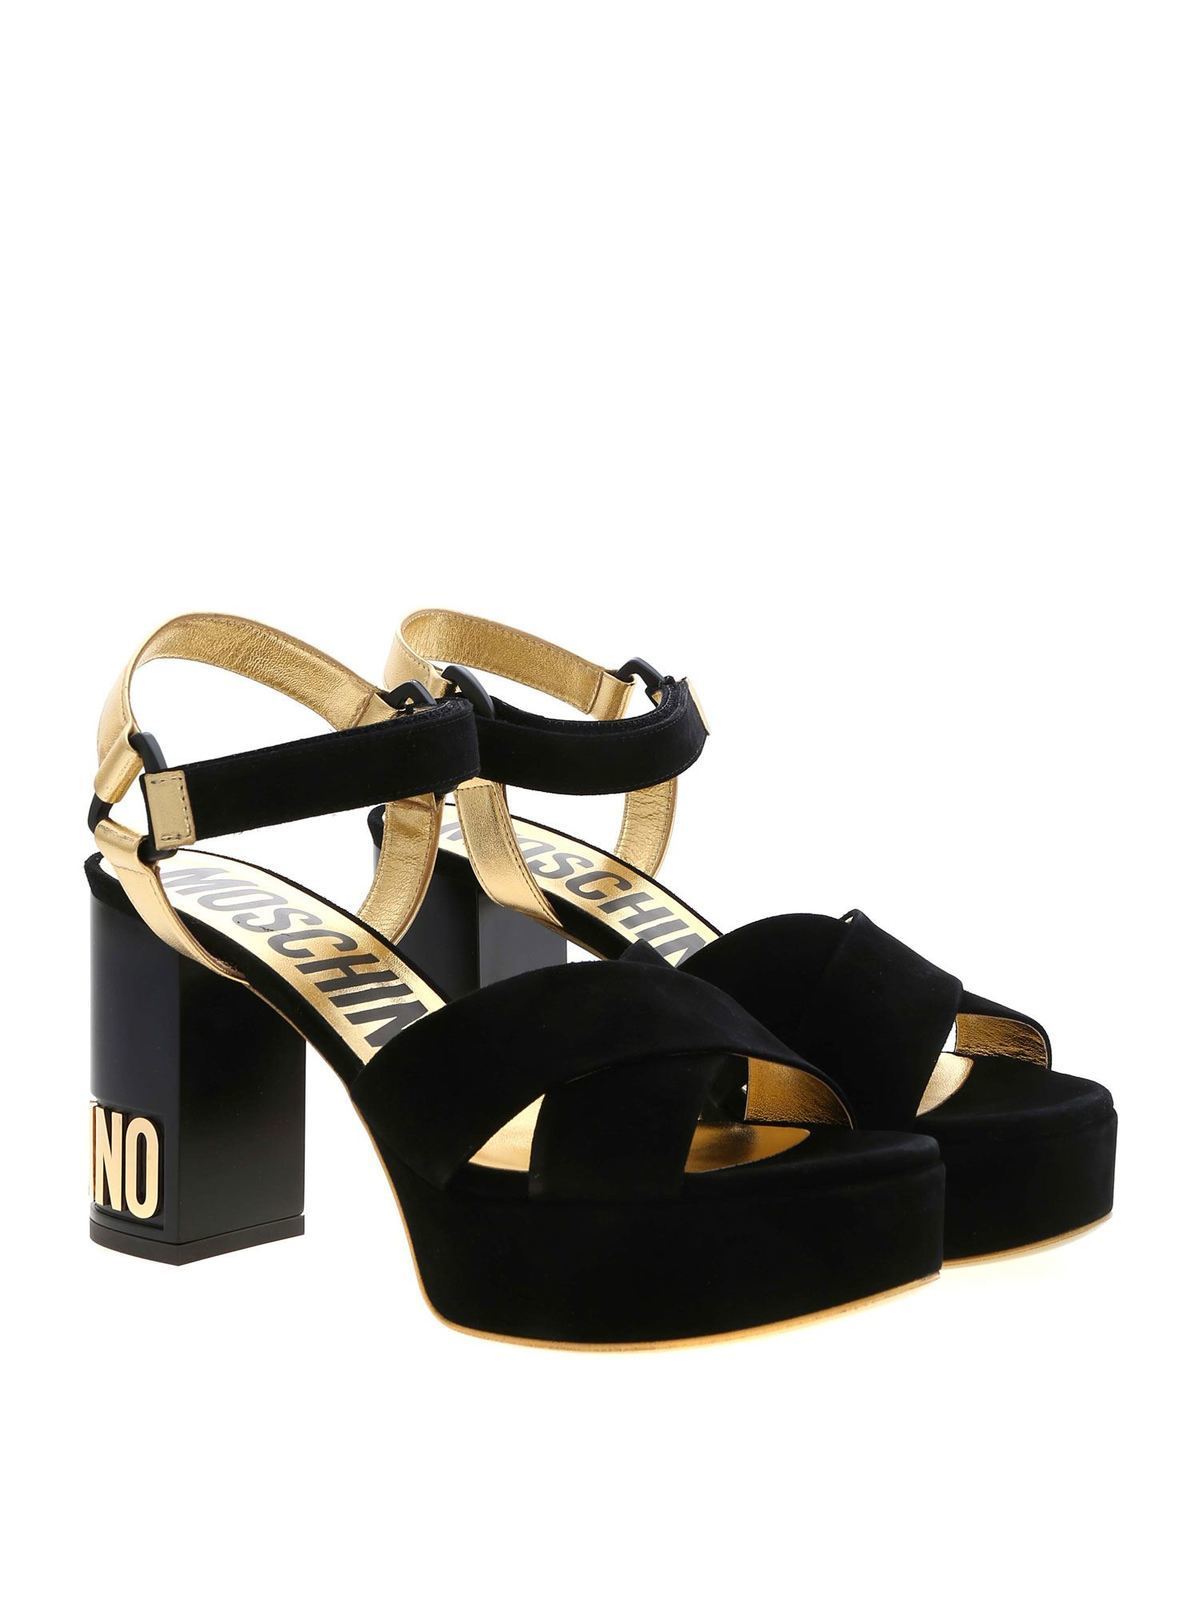 moschino sandals heels